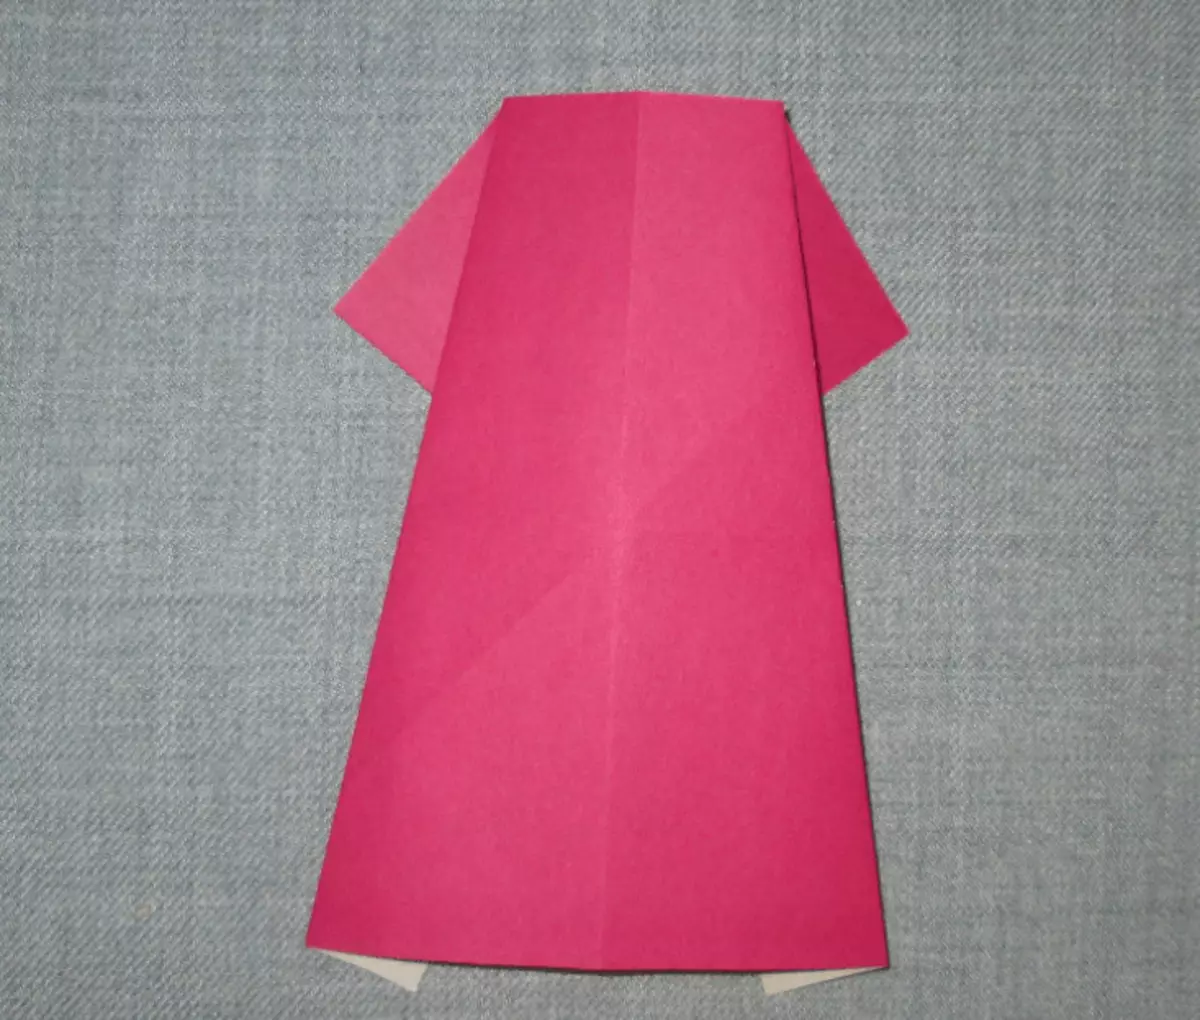 紙の折り紙「ドレス」：子供のためのスキーム。どのように3月8日にお母さんのステップバイパスのためのあなた自身の手で折り紙を作るには？指示に従ってドレスケースを折るする方法？ 27013_34